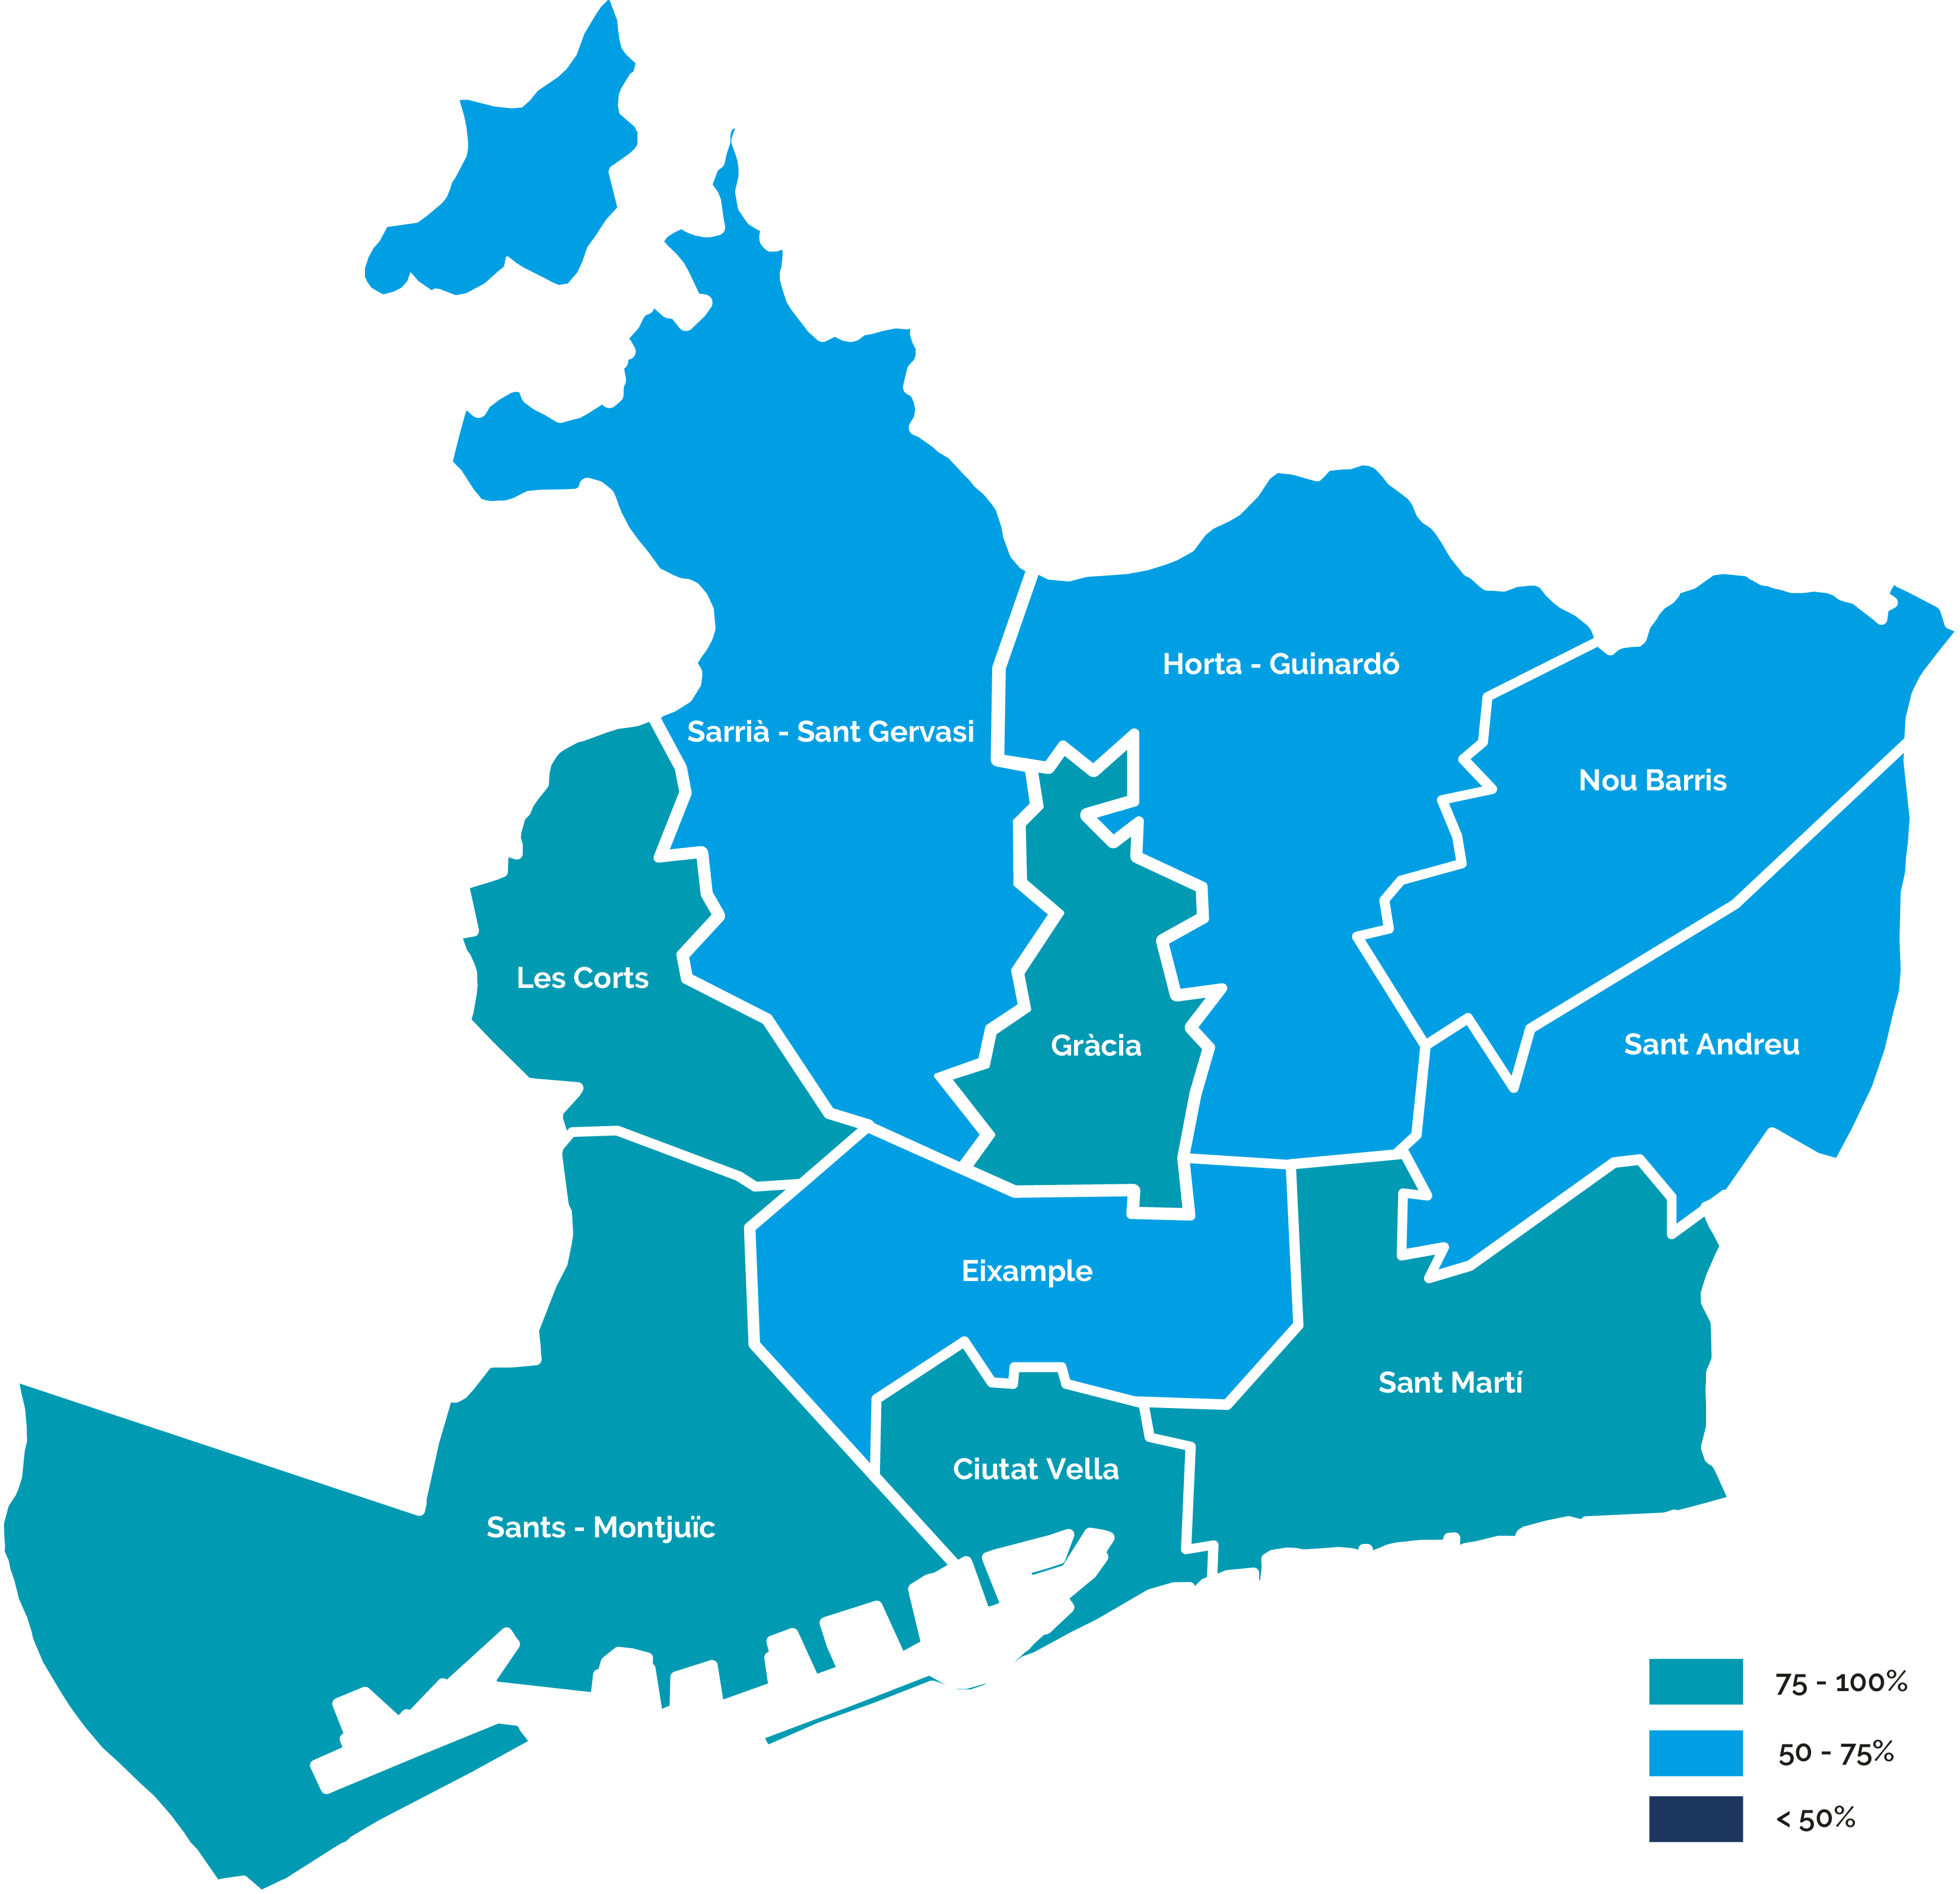 Mapa del nivel de despliegue de telelectura por distritos